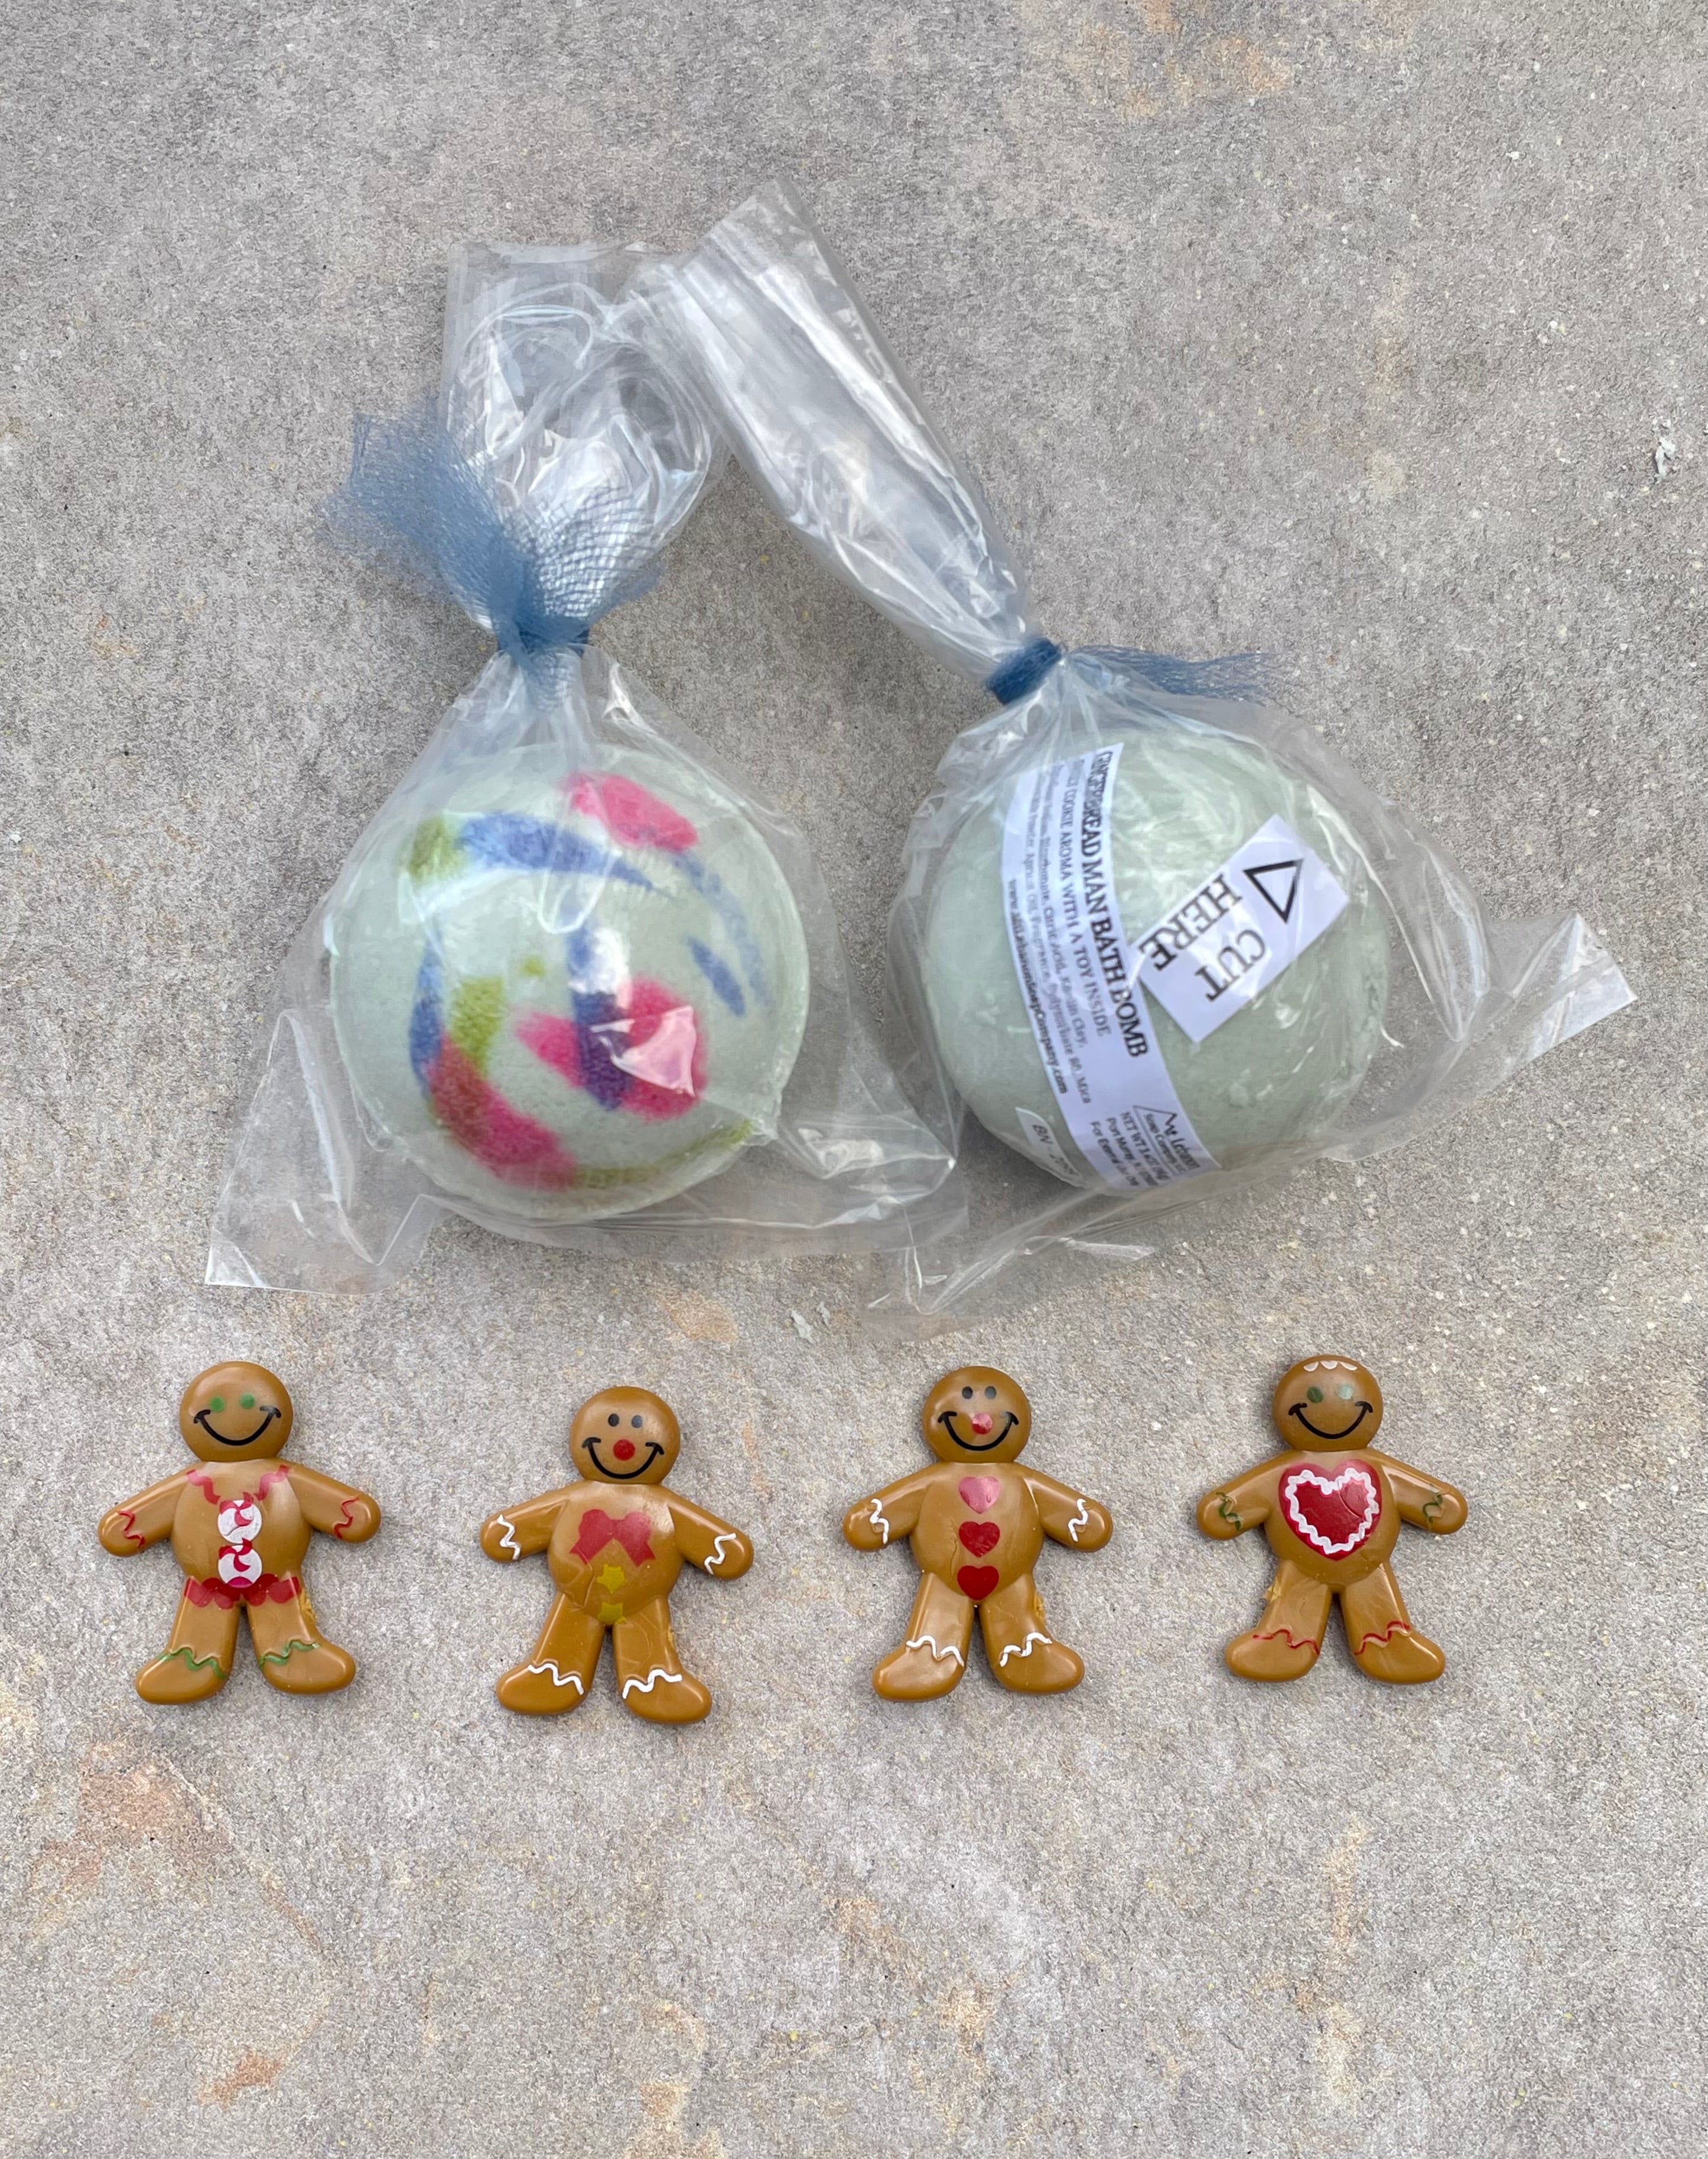 Gingerbread Man Bath Bomb - Toy Inside